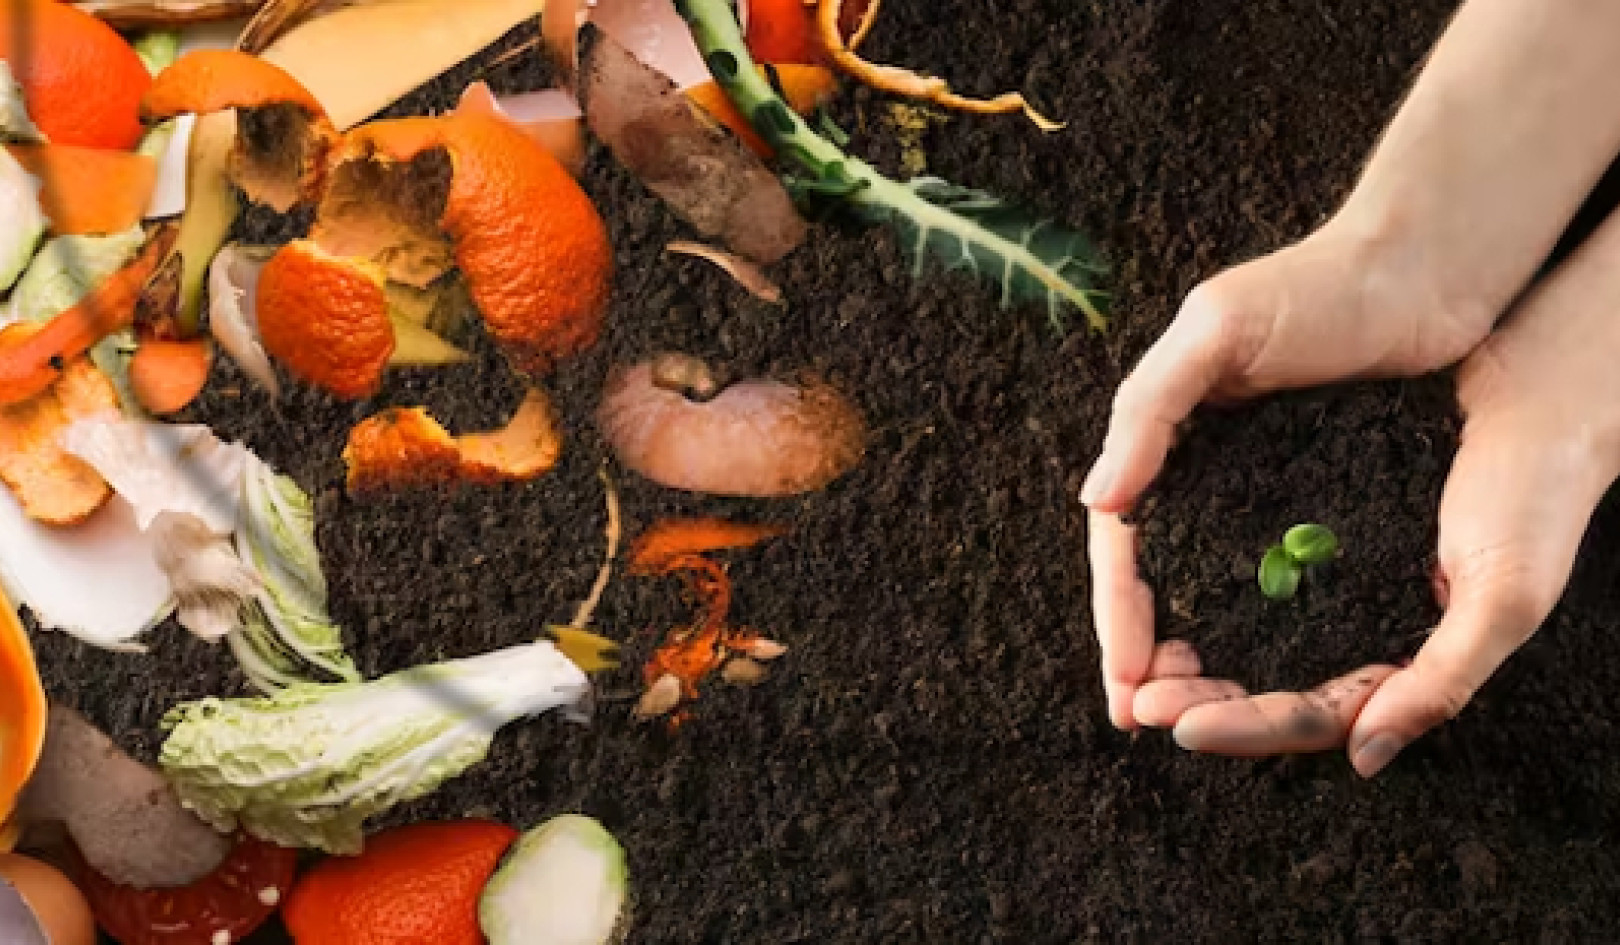 Atıktan Zenginliğe: Neden Gıda Atığını Kompostlamak Çöplükten Daha İyi